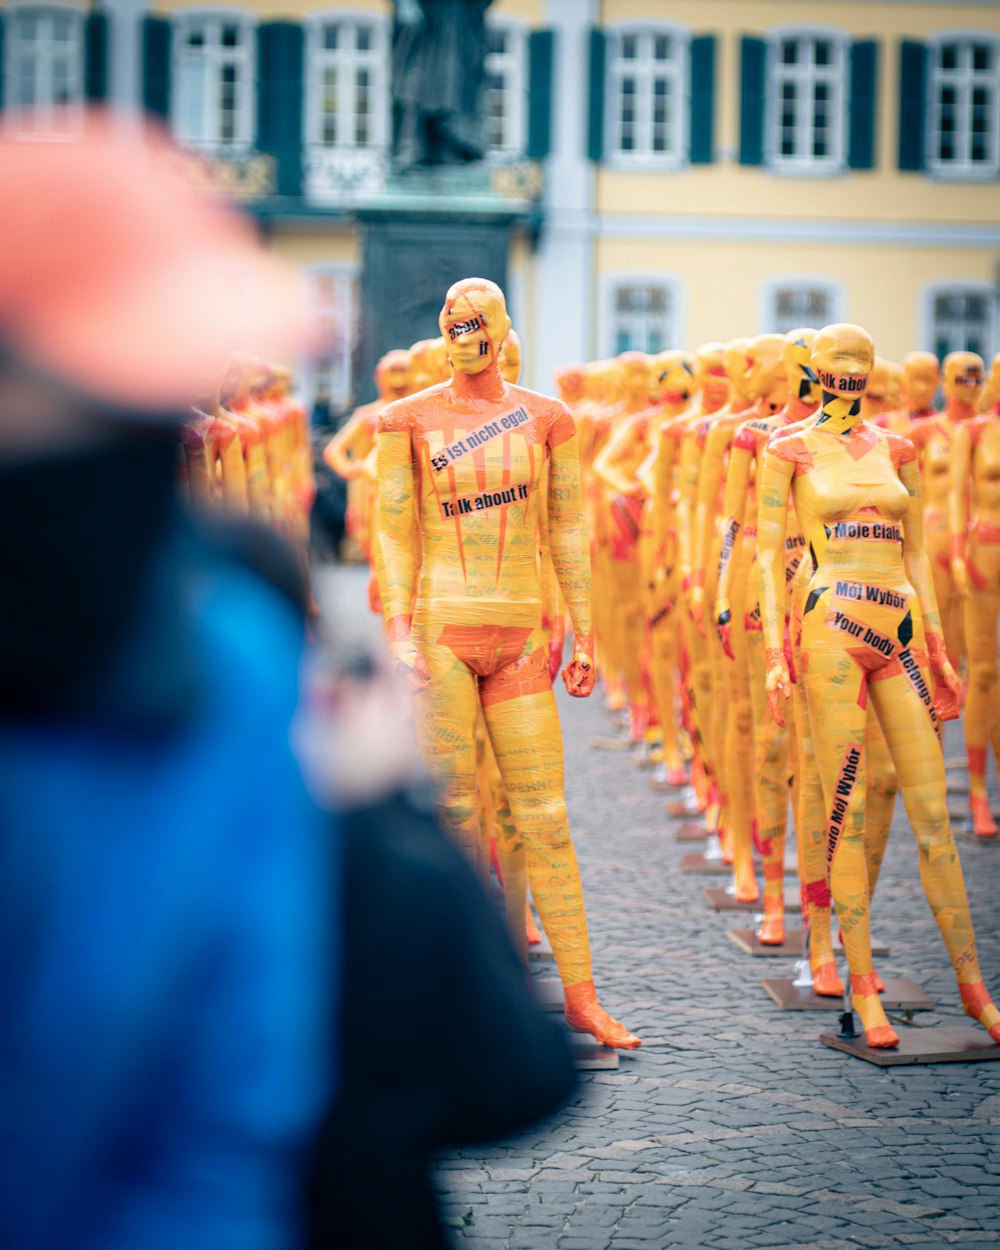 Persone in abito tradizionale blu e giallo che camminano per strada durante il giorno